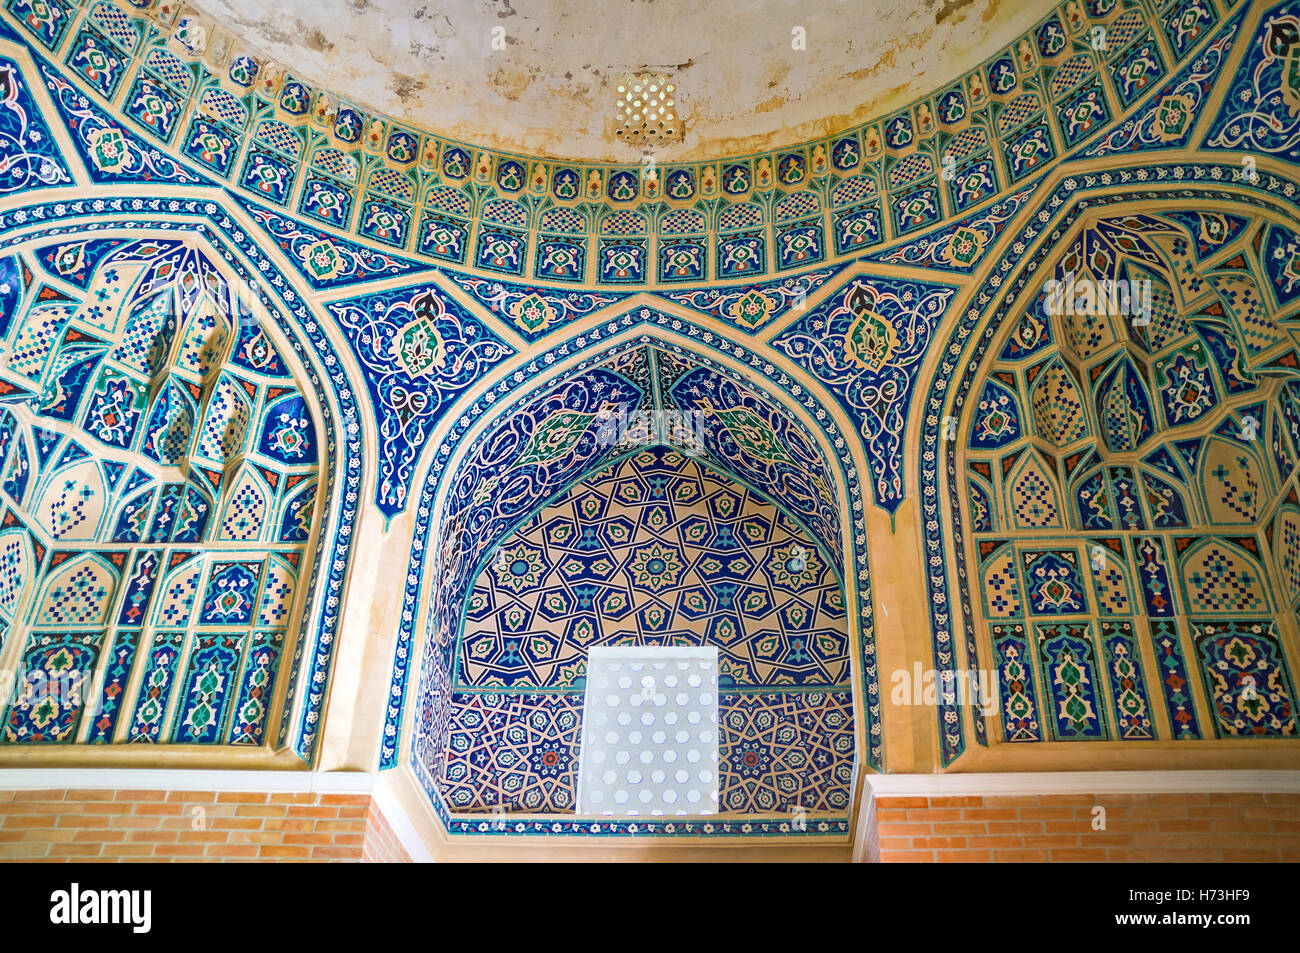 Le mur et le cadre de la fenêtre dans Qaldirghochbiy Mausolée décorées de motifs islamiques et des carreaux émaillés Banque D'Images